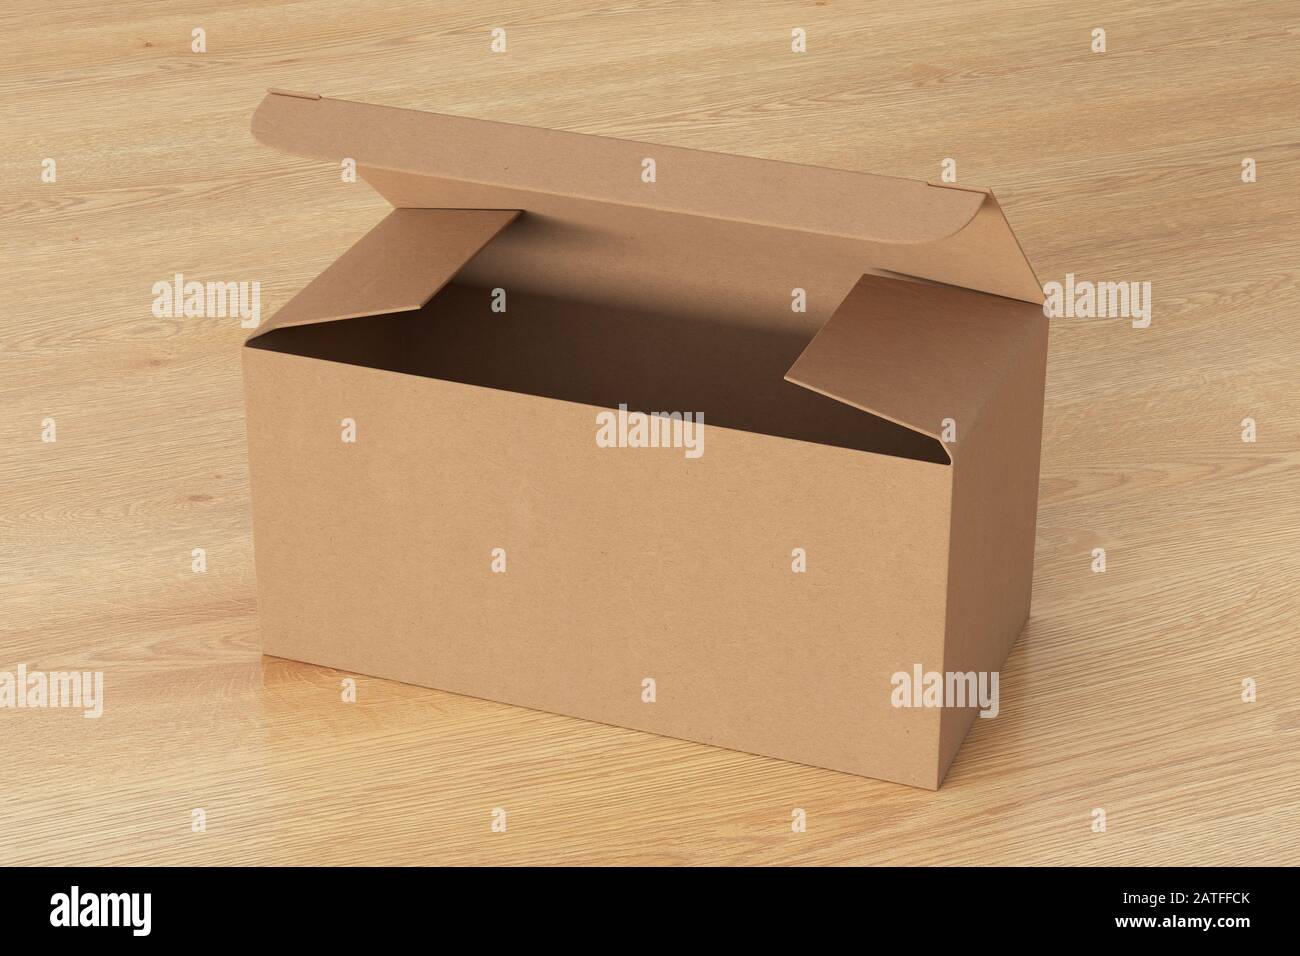 Boîte large en carton vierge avec couvercle à rabat articulé ouvert sur fond en bois. Chemin de détourage autour de la maquette de boîte Banque D'Images